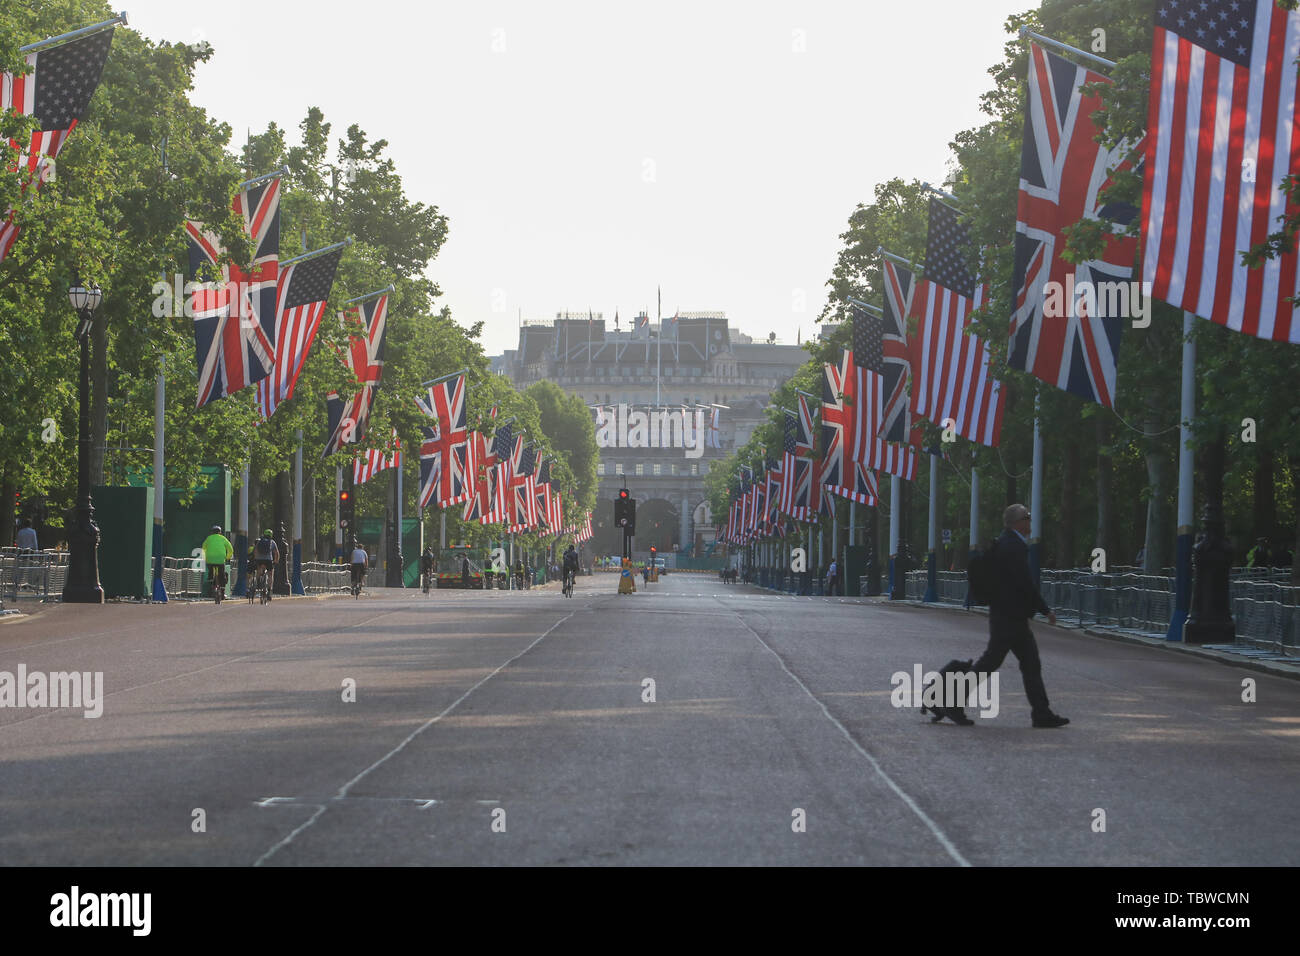 Le centre commercial et paré de drapeaux lors d'une visite d'Etat de trois jours par le Président Donald Trump à la Grande-Bretagne. Banque D'Images